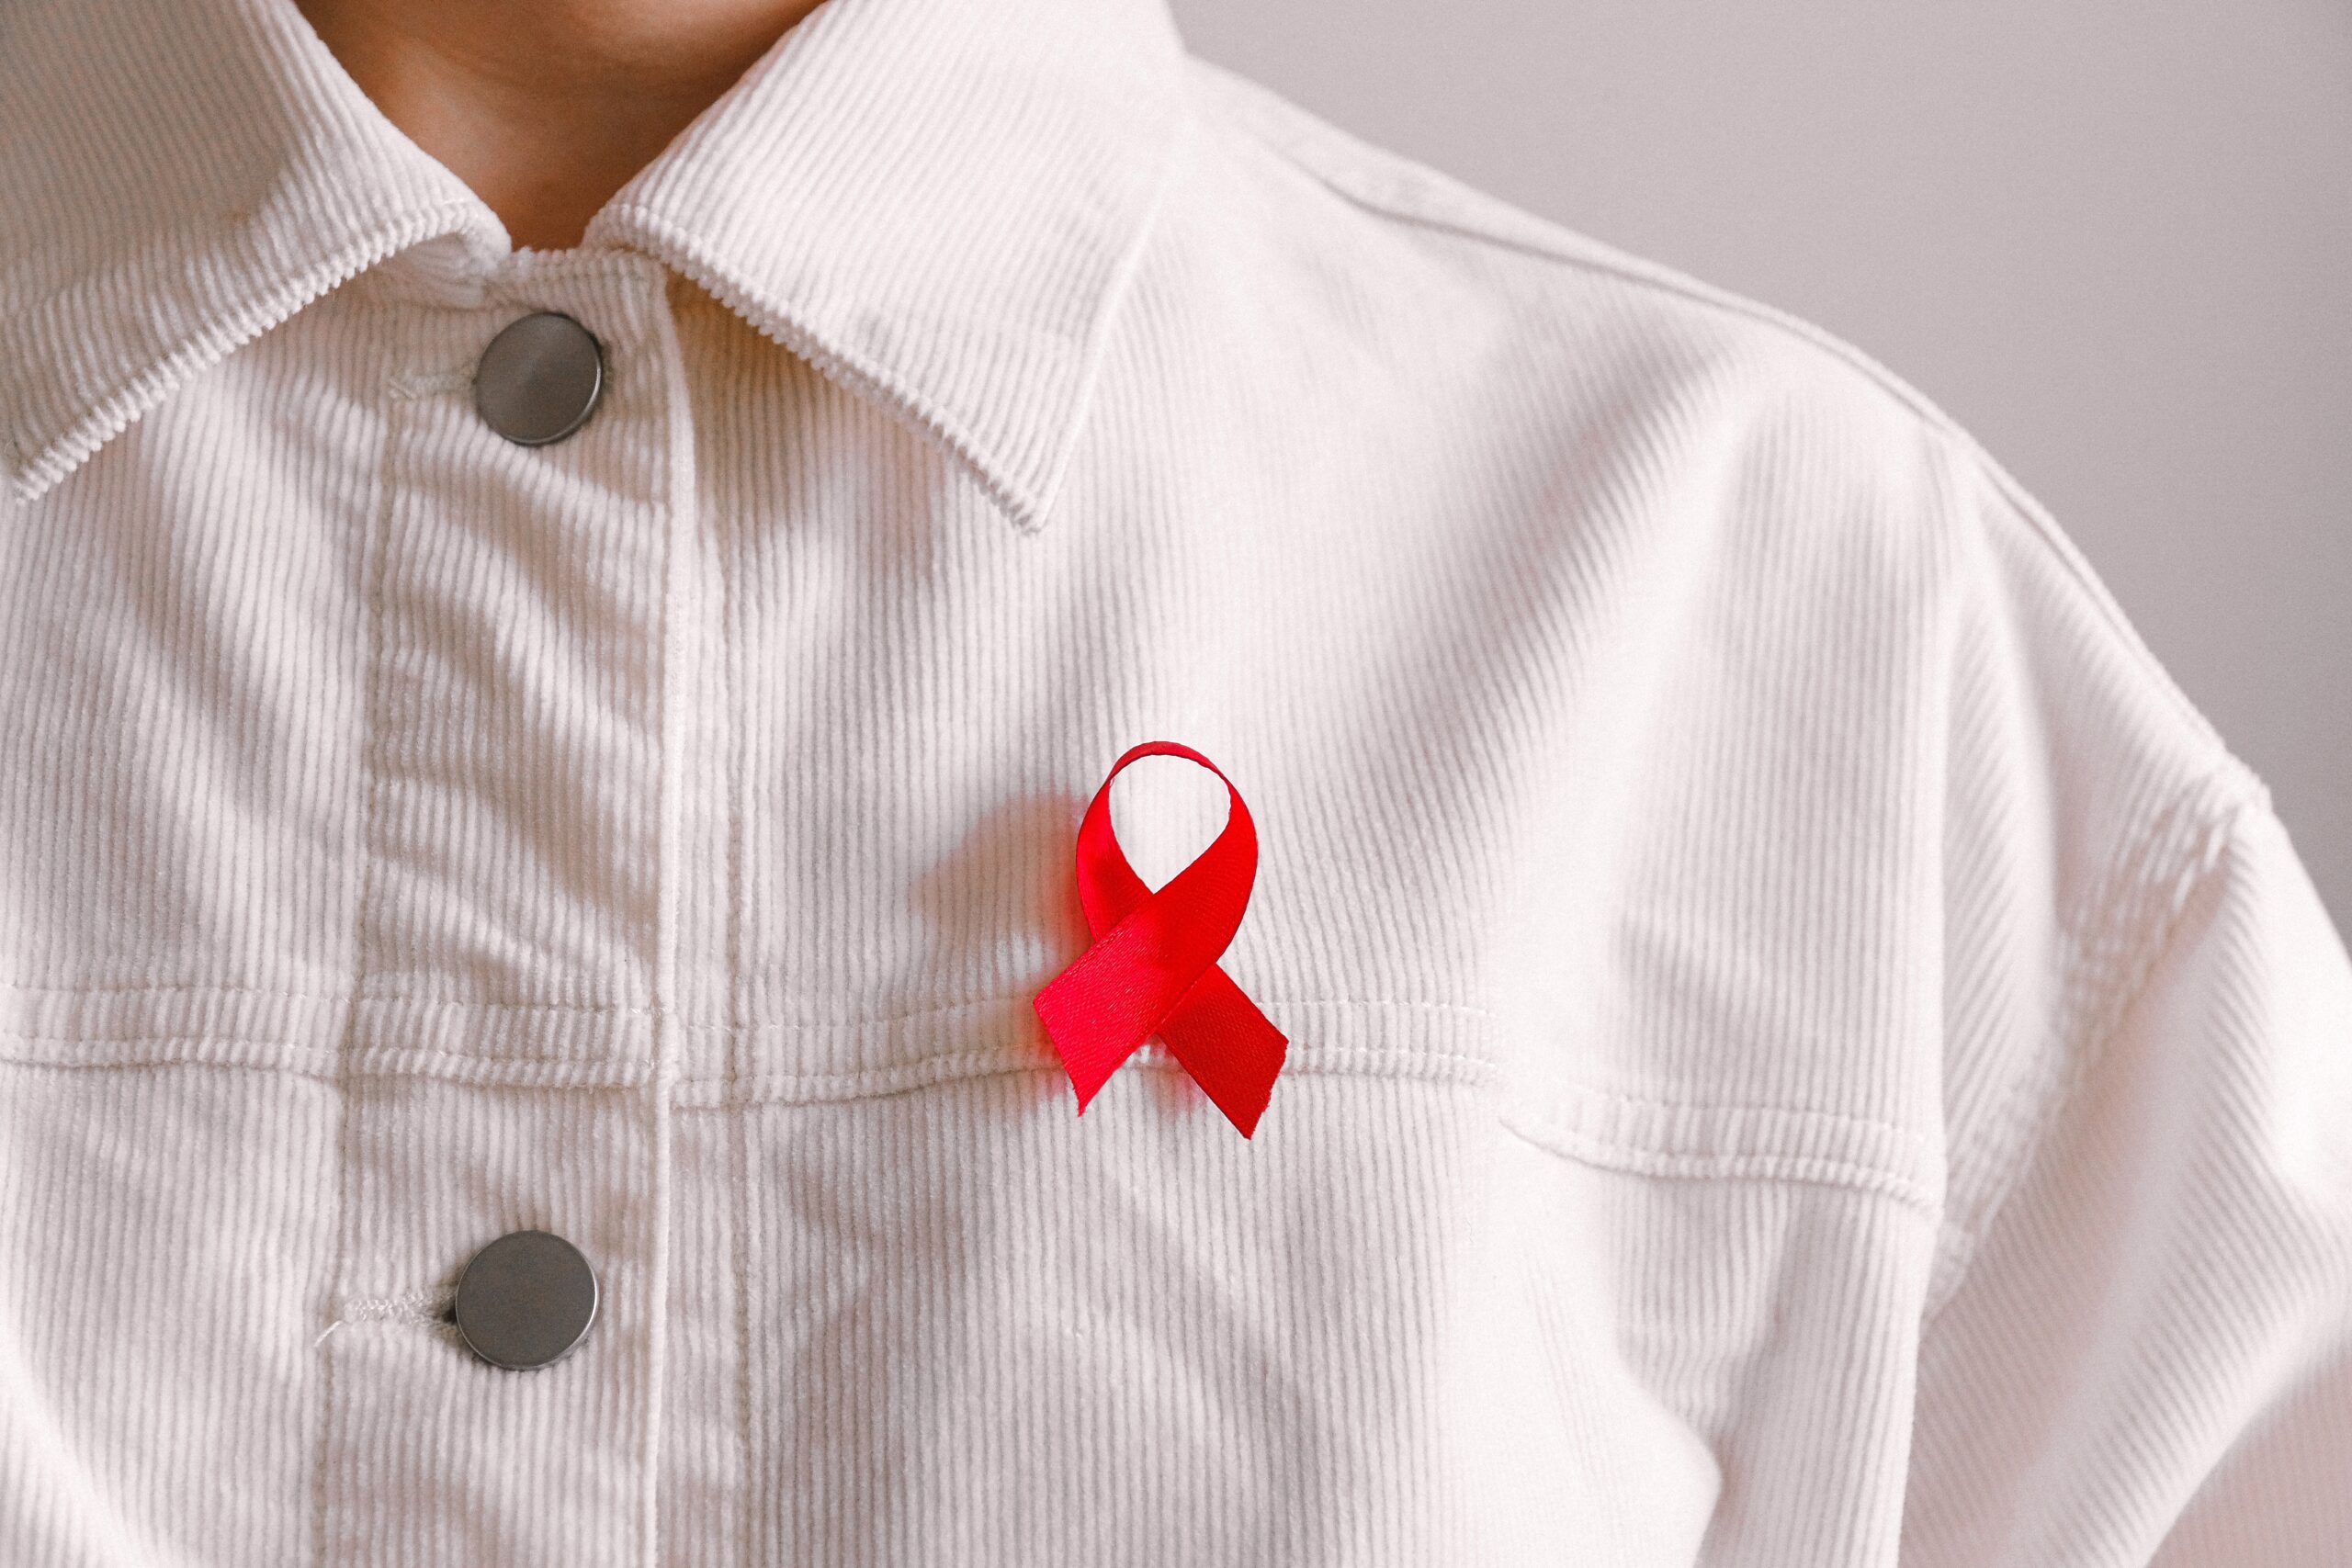 3467 българи са регистрирани с ХИВ